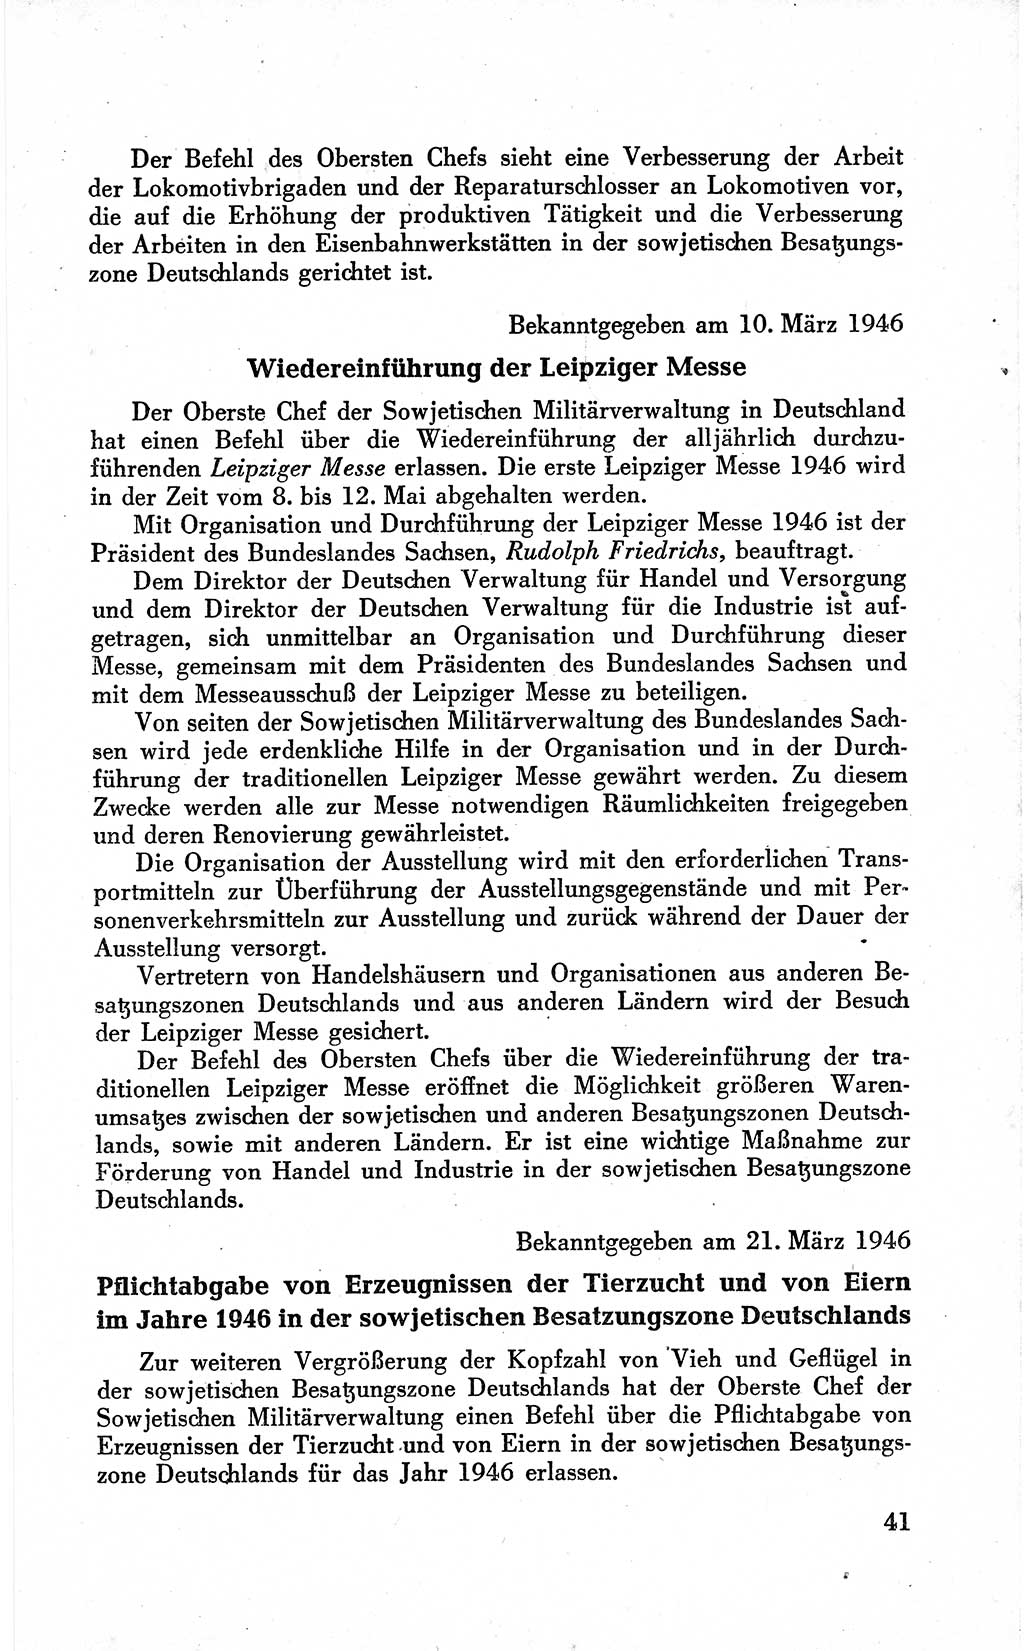 Befehle des Obersten Chefs der Sowjetischen Miltärverwaltung (SMV) in Deutschland - Aus dem Stab der Sowjetischen Militärverwaltung in Deutschland 1946 (Bef. SMV Dtl. 1946, S. 41)